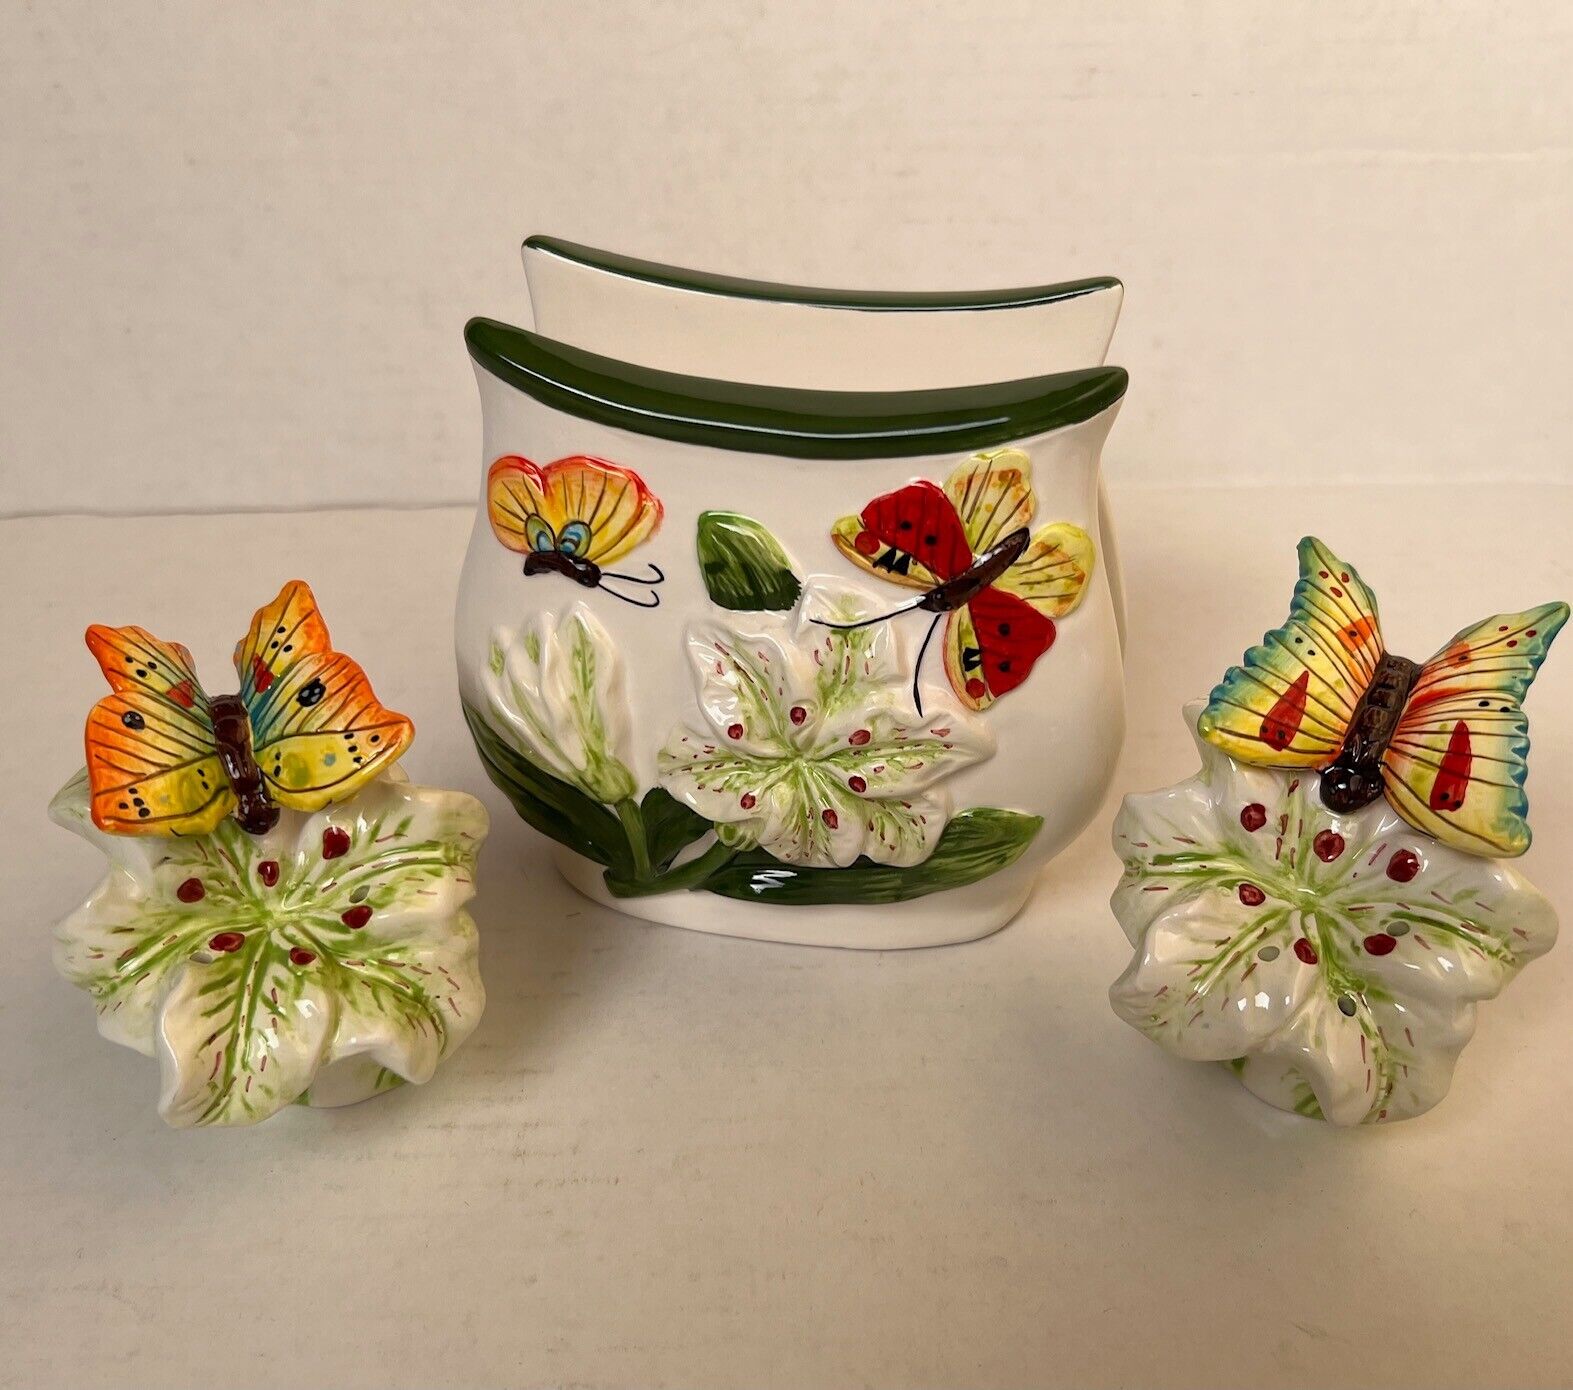 3 Pcs ceramic Butterfly Table Set - Salt & Pepper shakers & napkin holder new.